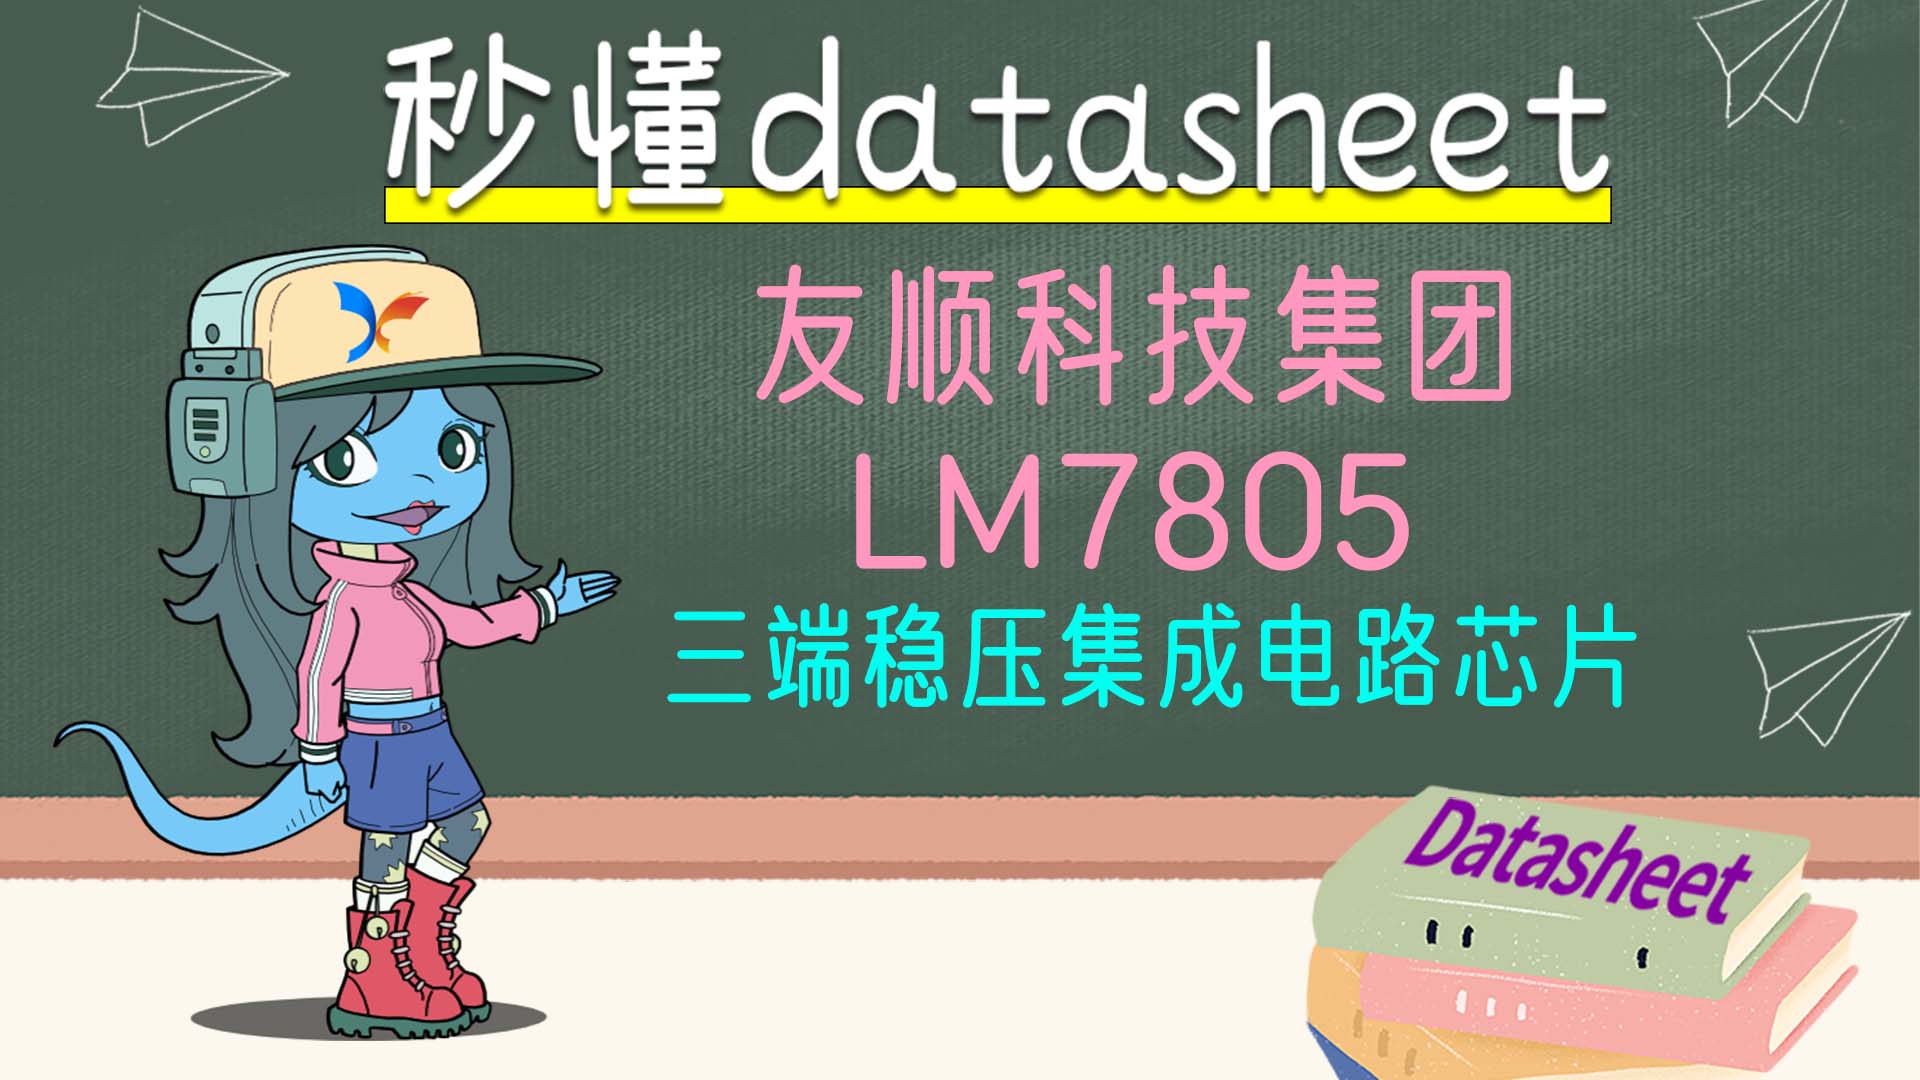 【秒懂datasheet】友顺科技集团 LM7805